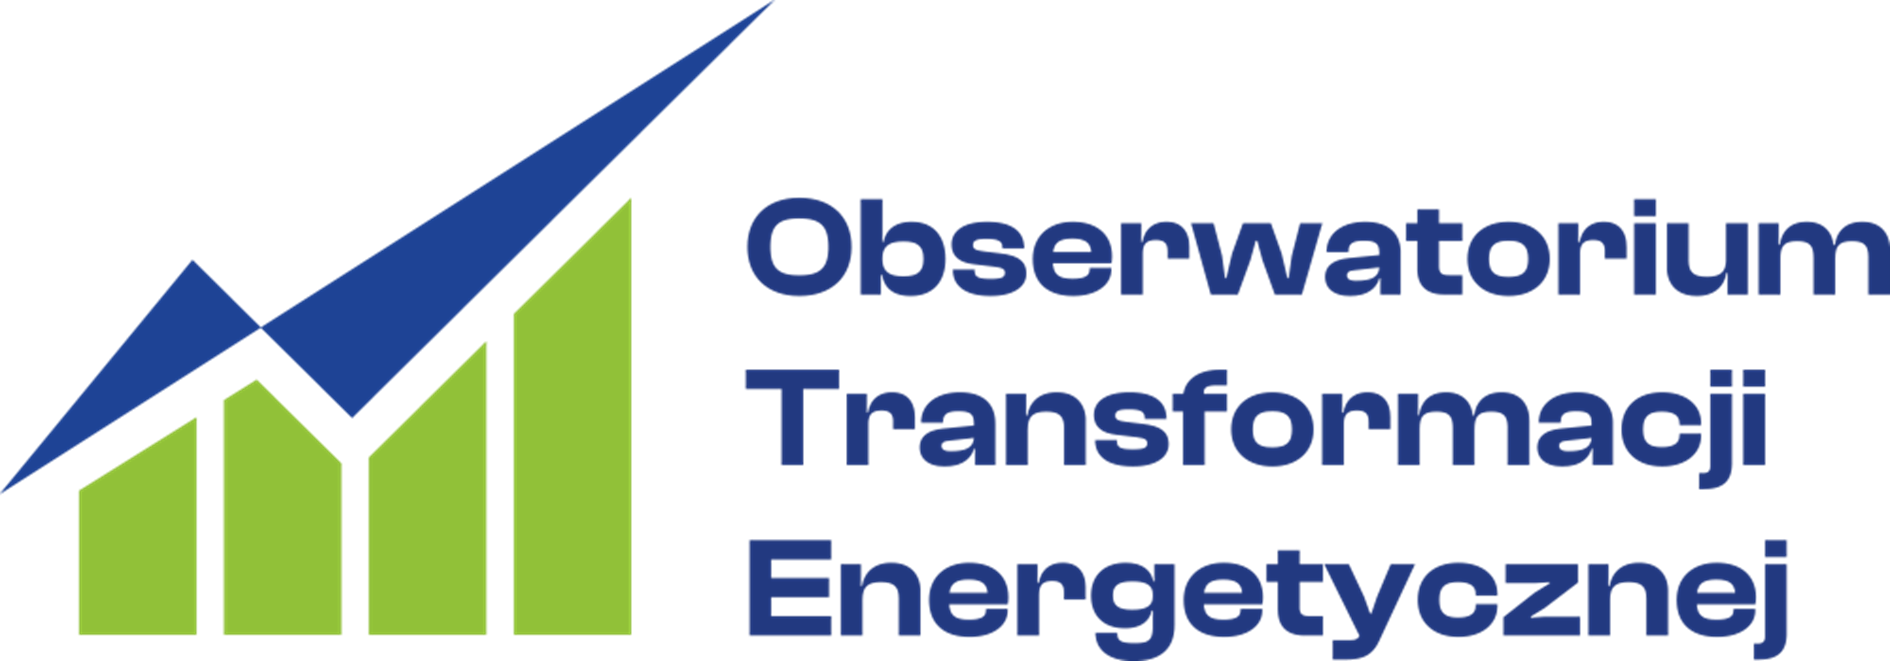 Obserwatorium Transformacji Energetycznej